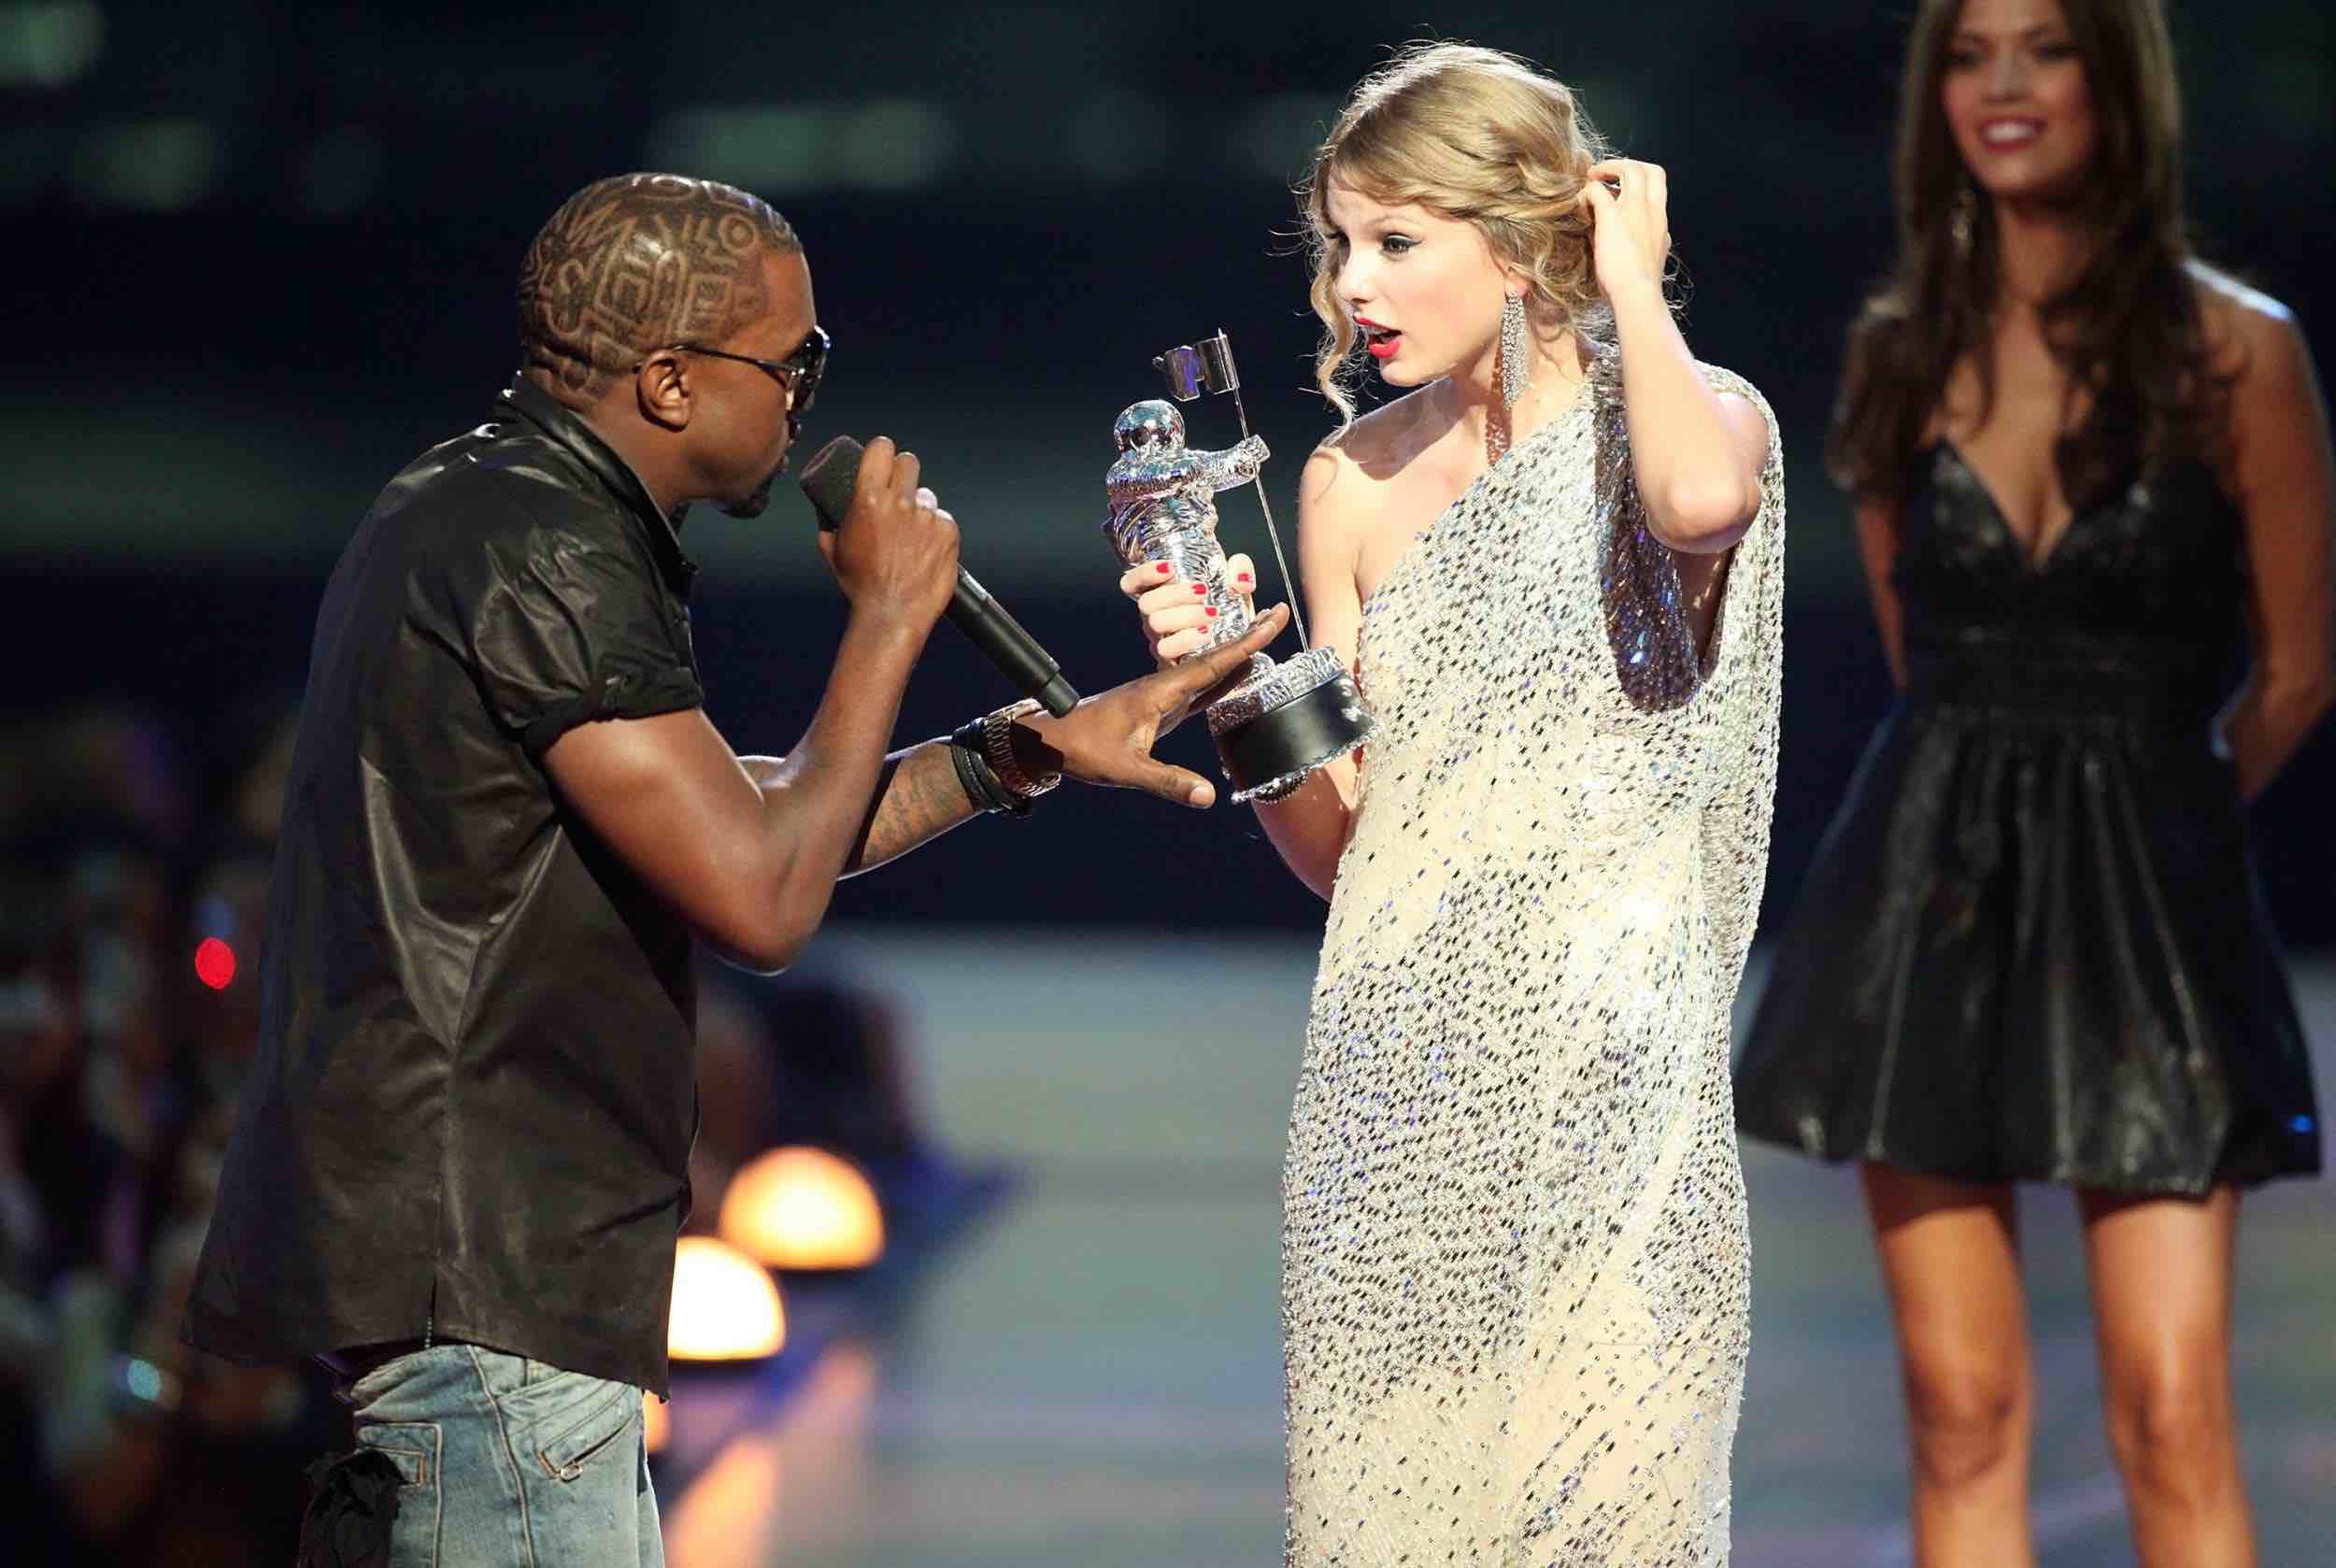 Kanye West no solo hizo llorar a Taylor Swift en los VMAs 2009